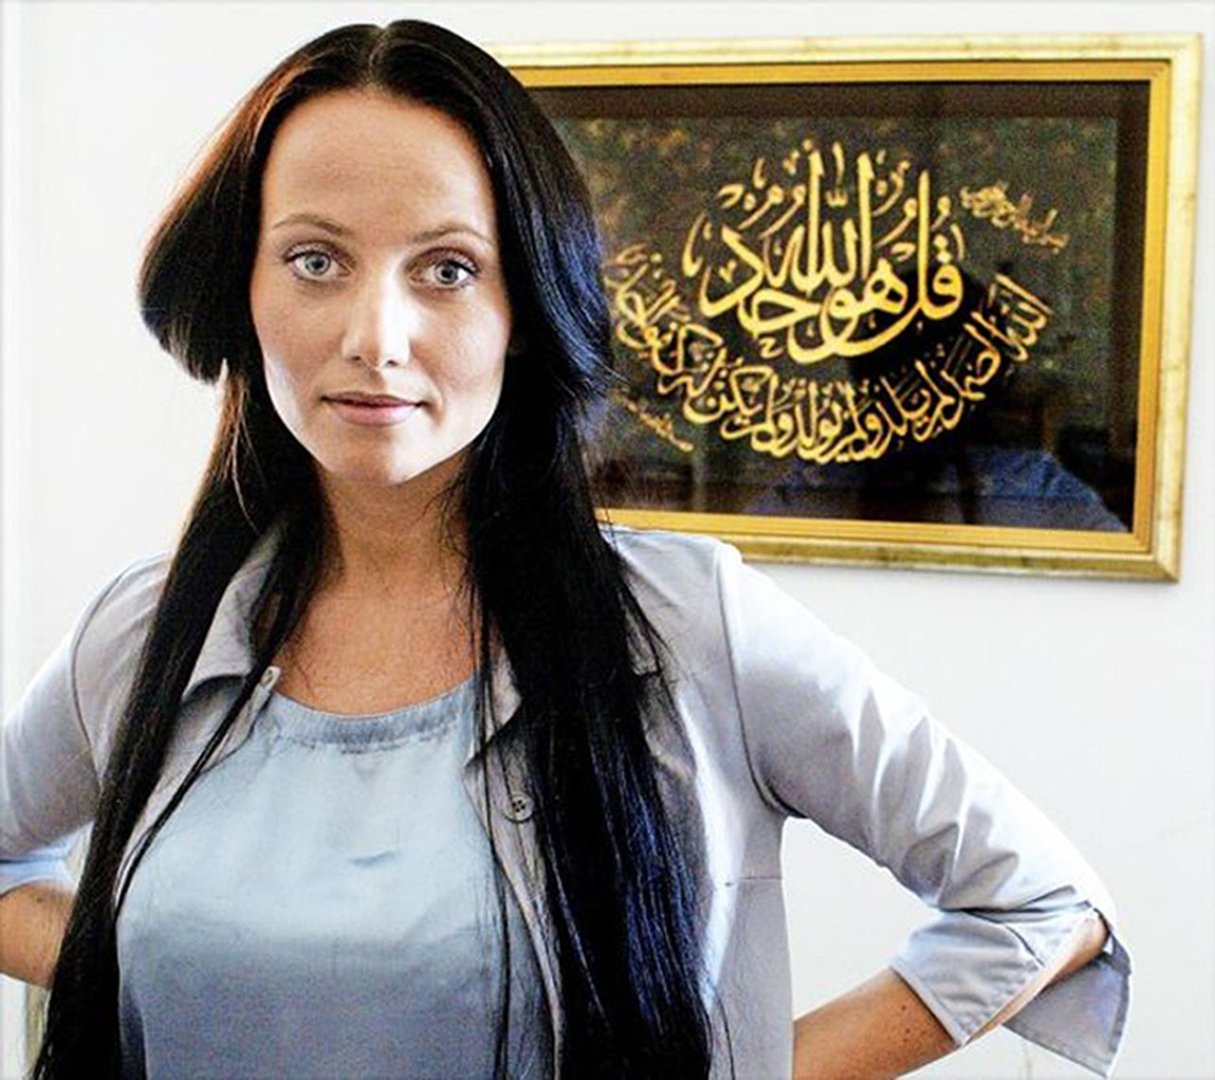 Née d’un père syrien et d’une mère finlandaise, elle ne porte pas le voile hors de la mosquée. © DR